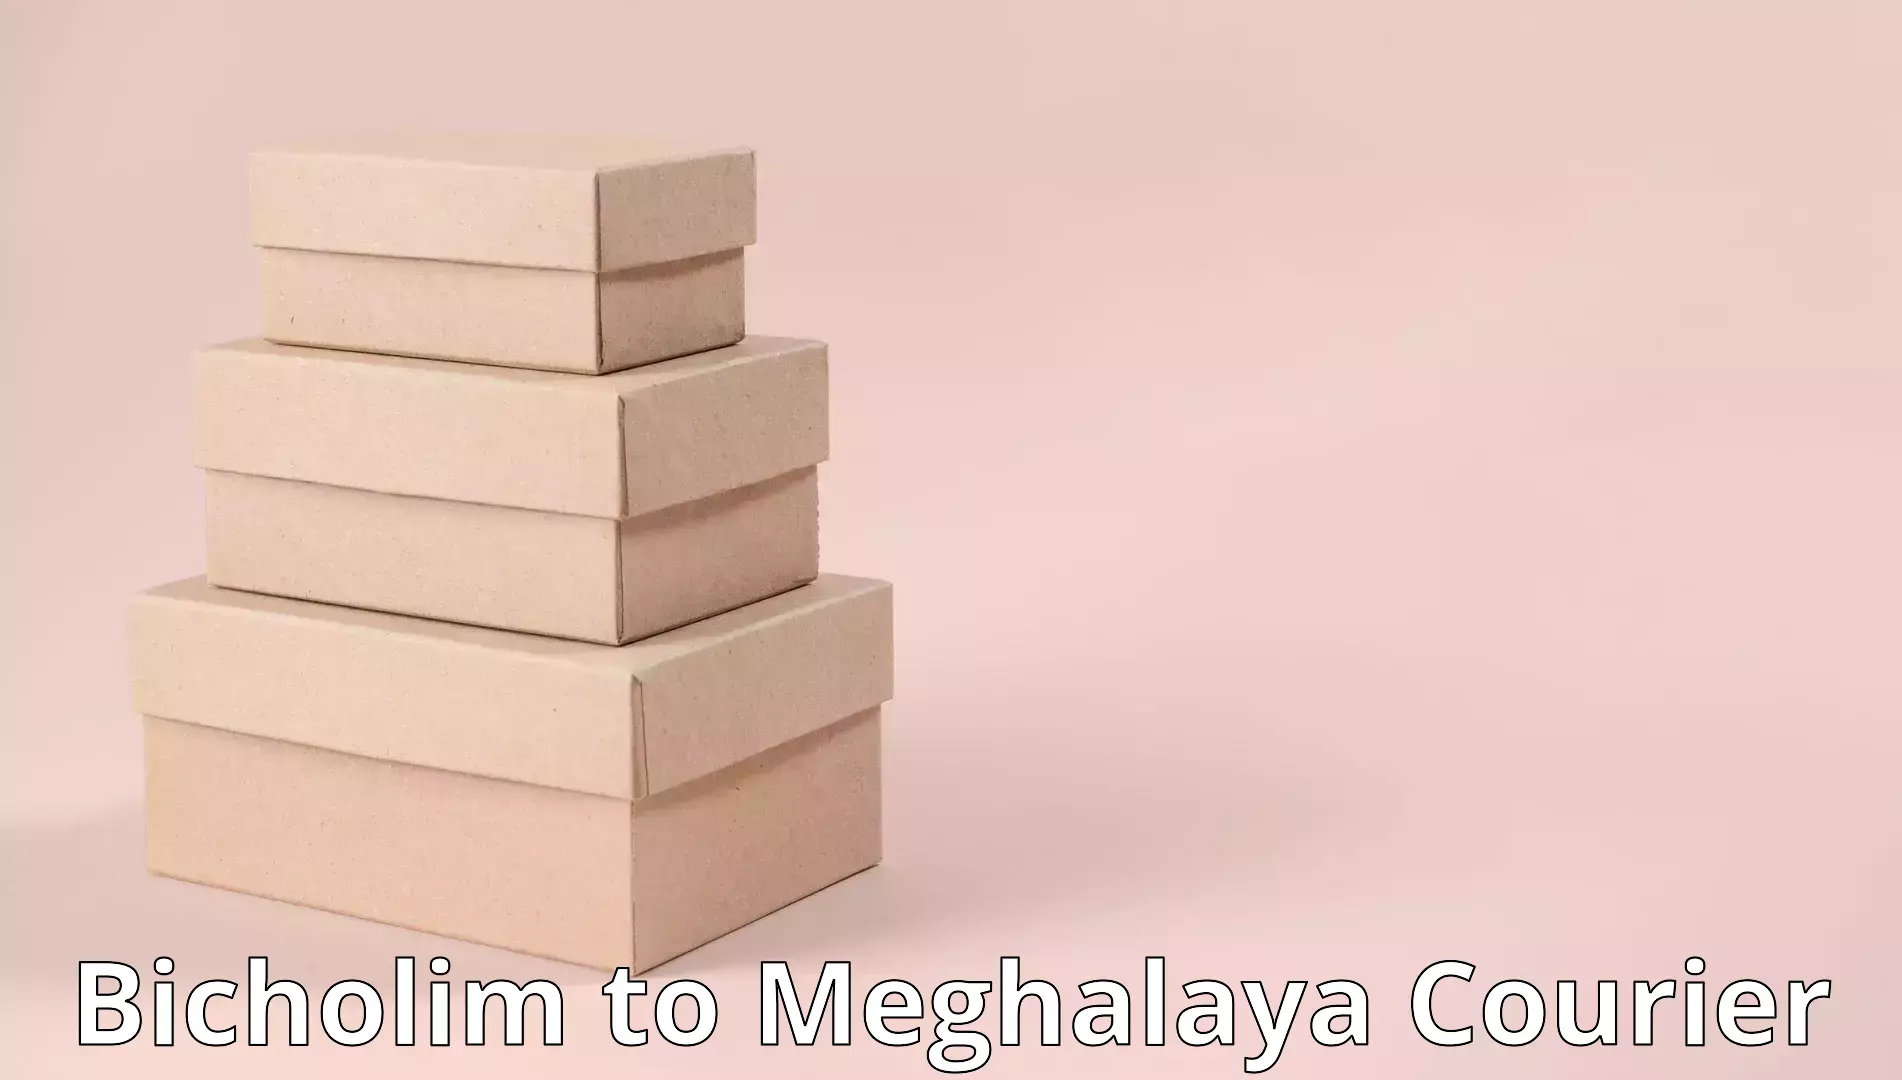 Residential moving experts Bicholim to Meghalaya